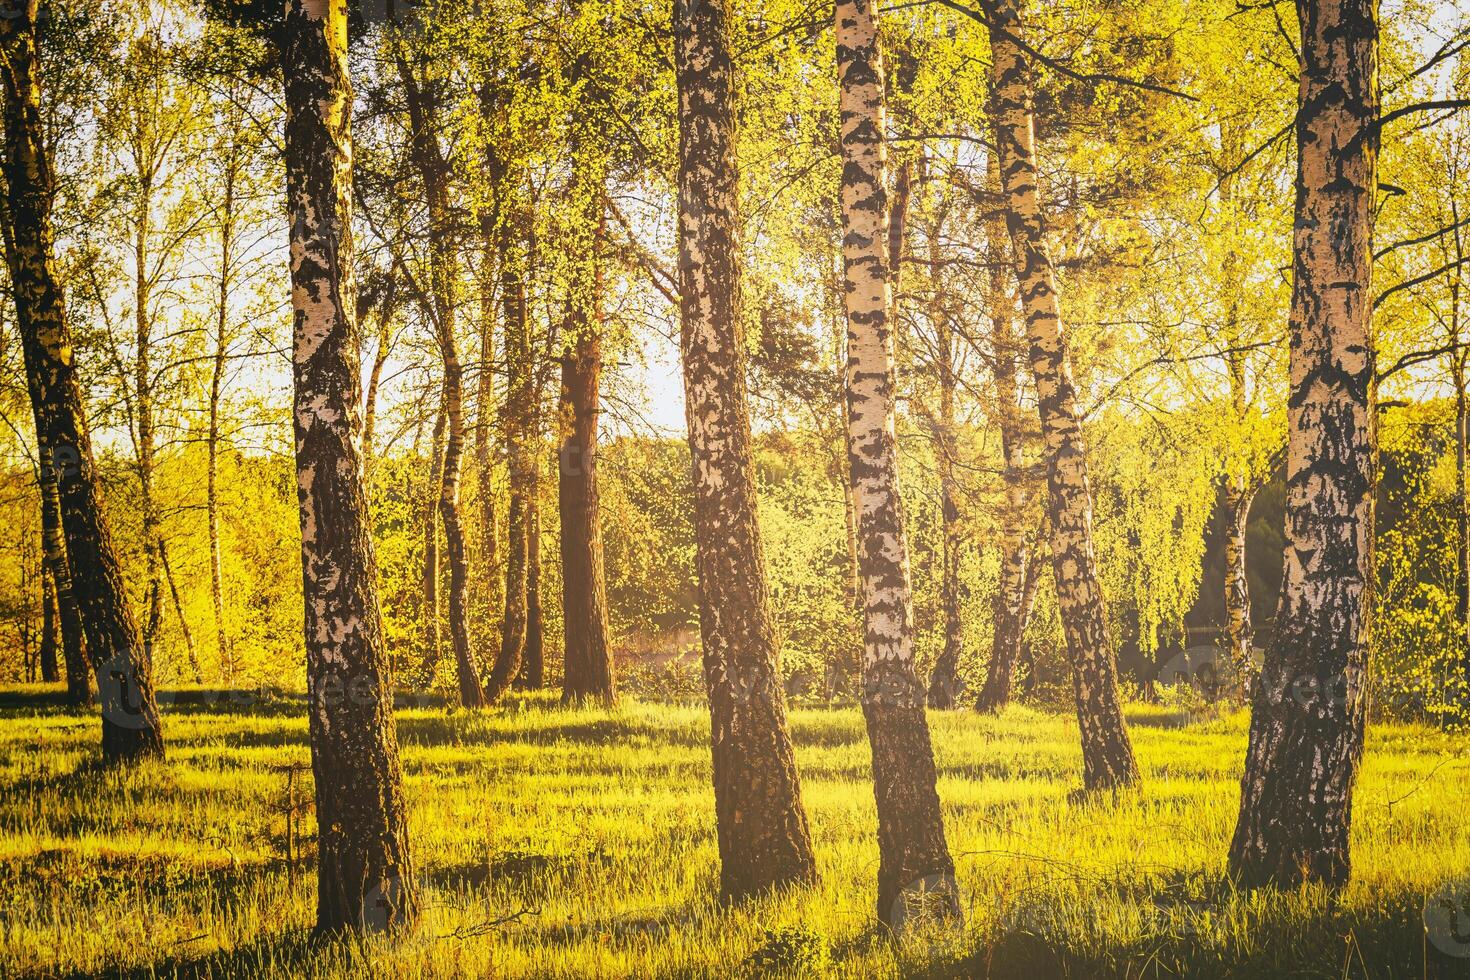 righe di betulla tronchi con giovane fogliame, illuminato di il sole a tramonto o alba nel primavera. Vintage ▾ film estetico. foto